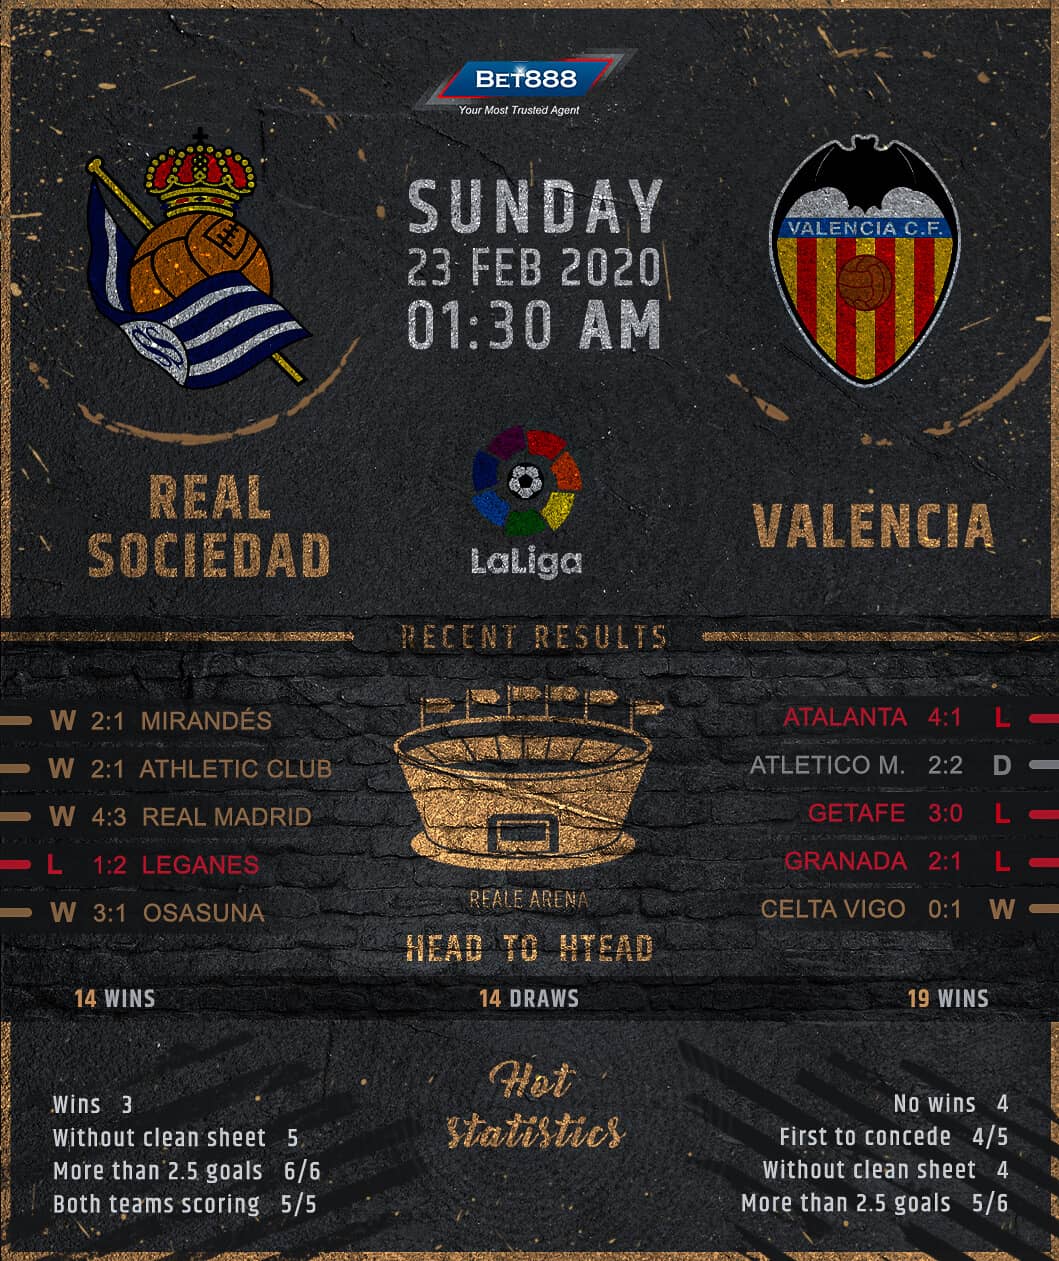 Real Sociedad vs Valencia 23/02/20